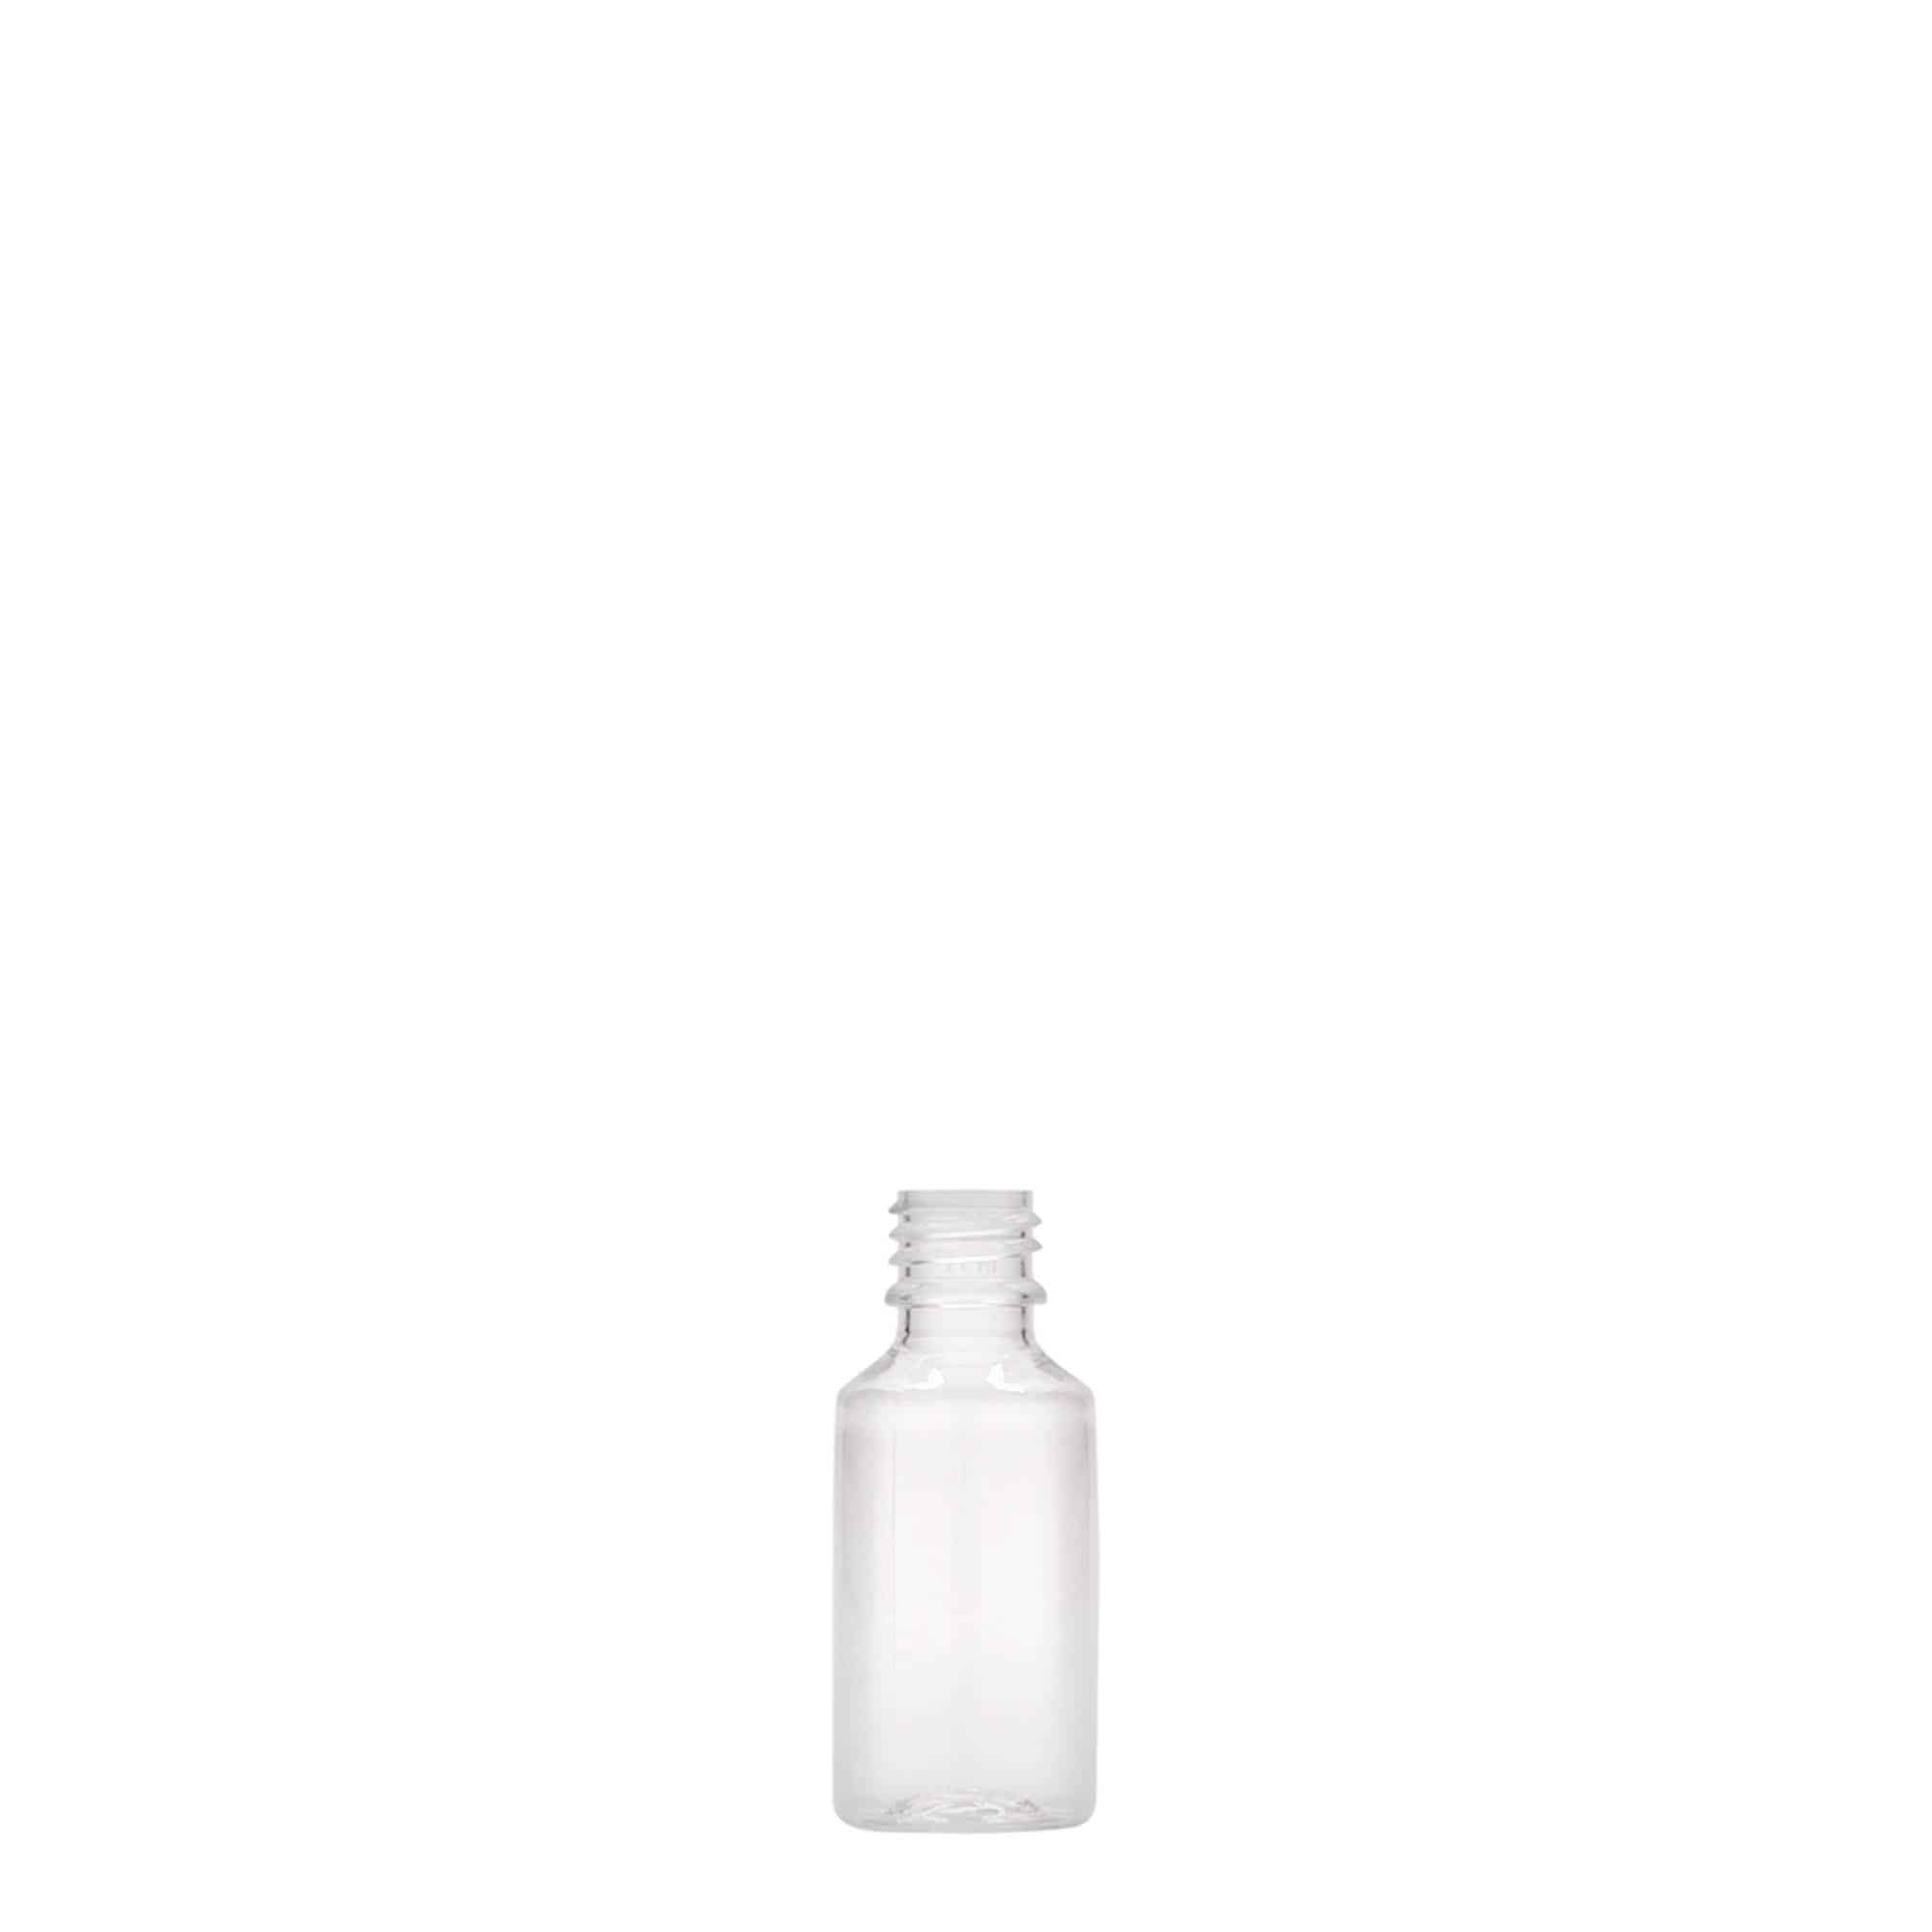 10 ml PET-pullo 'E-Liquid' laatu- ja lapsivarmistus, muovi, suu: Kierrekorkki